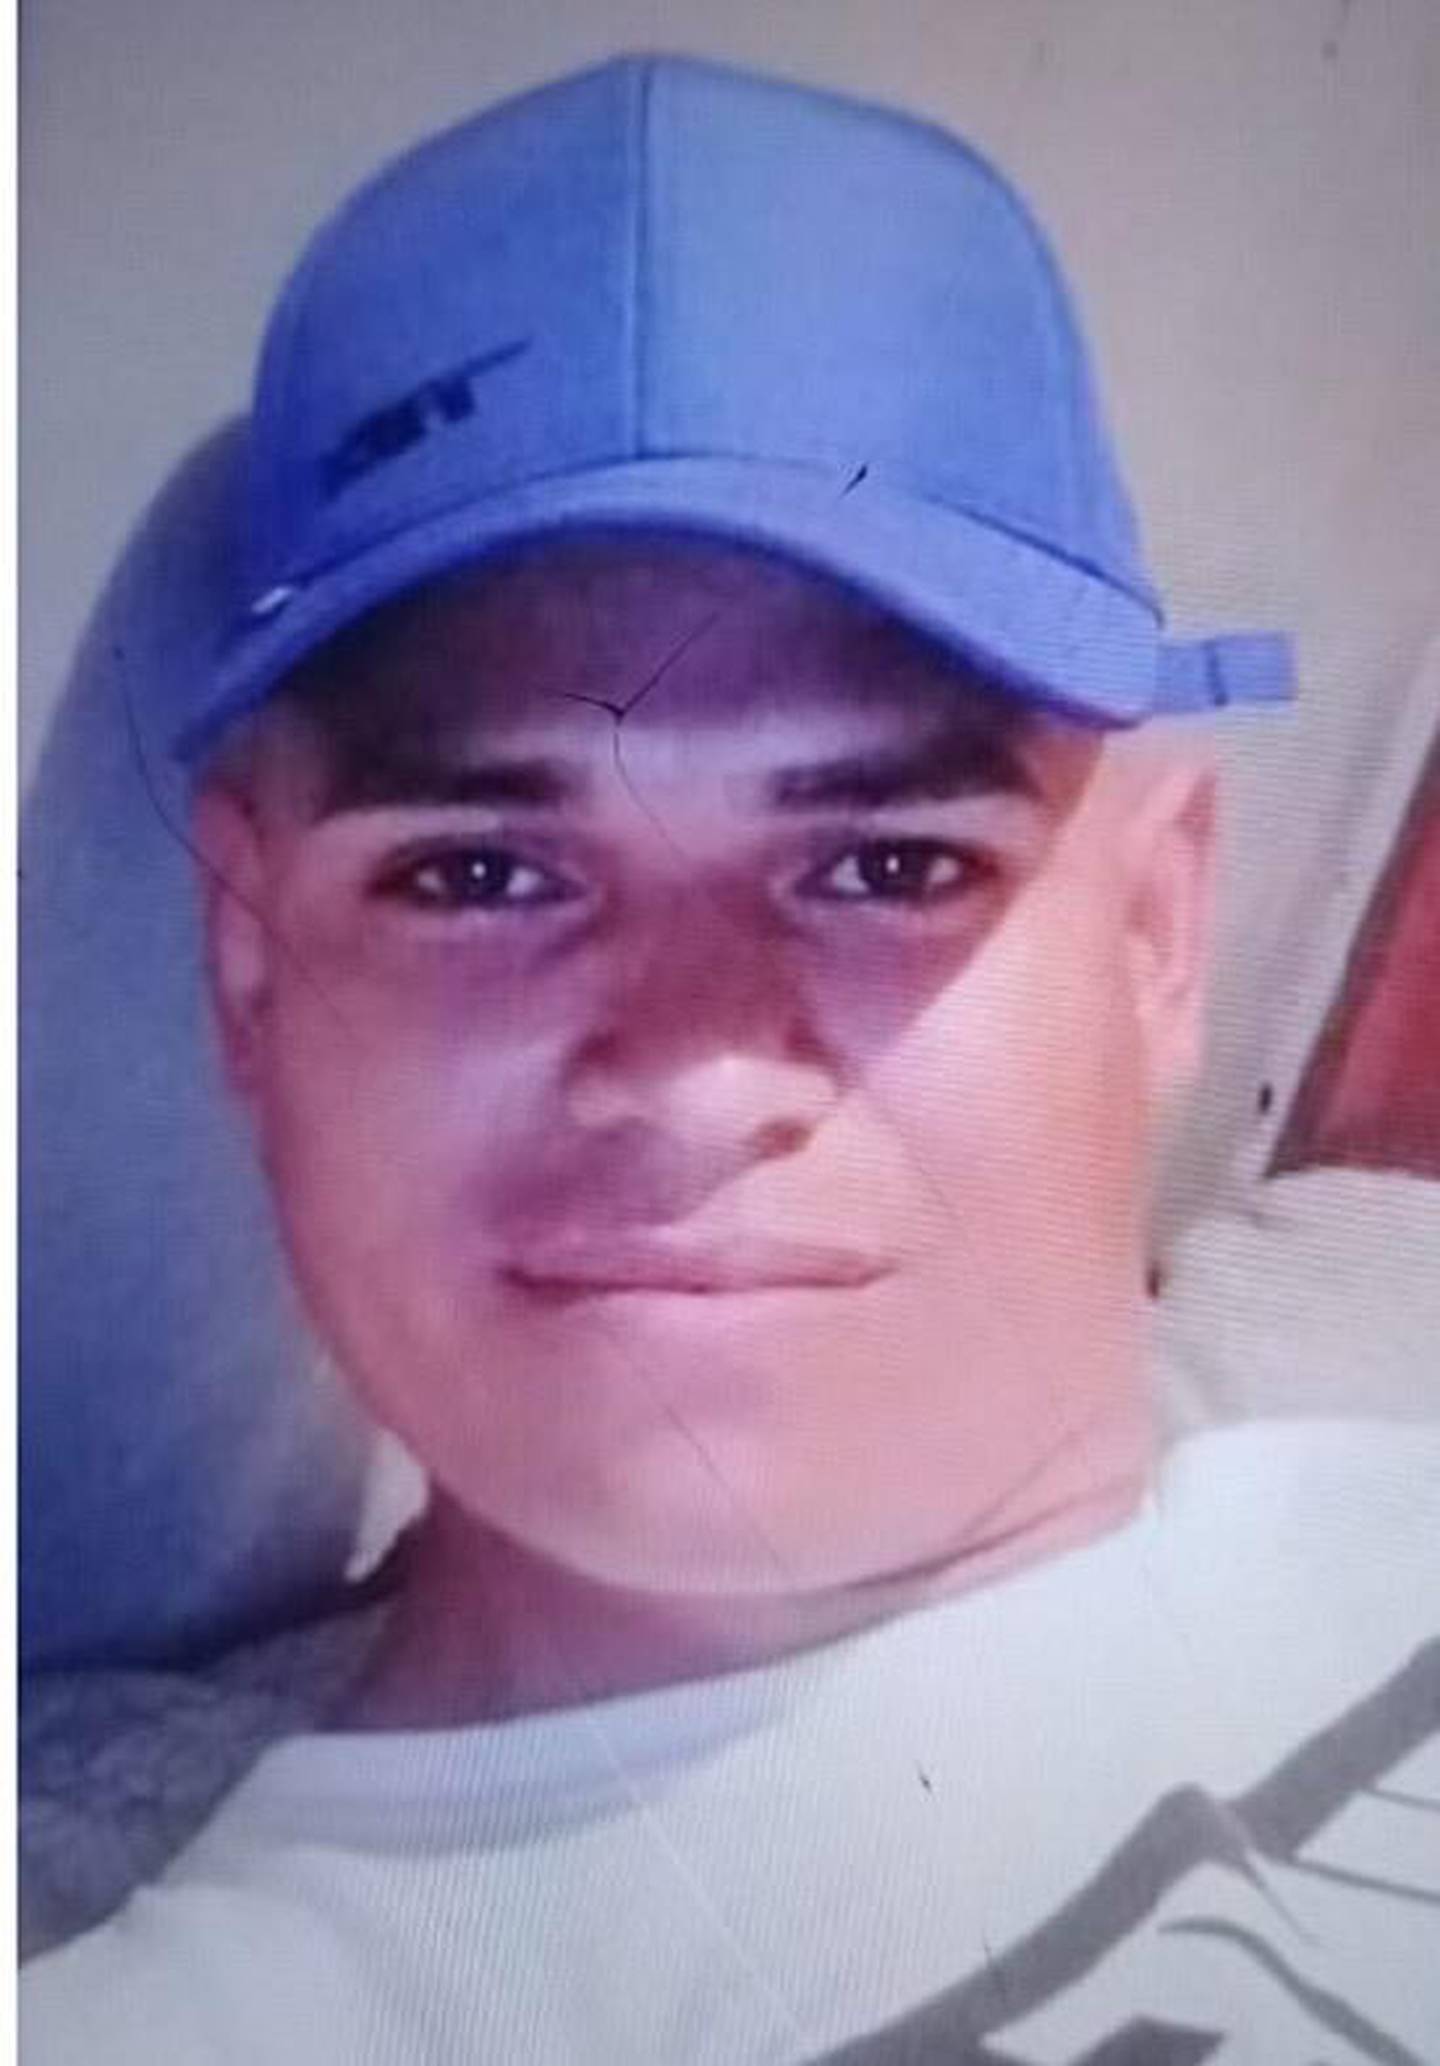 Alexander Narváez Martínez, de 26 años quien fue visto por última vez el pasado 16 de marzo, en La Carpio, La Uruca, San José